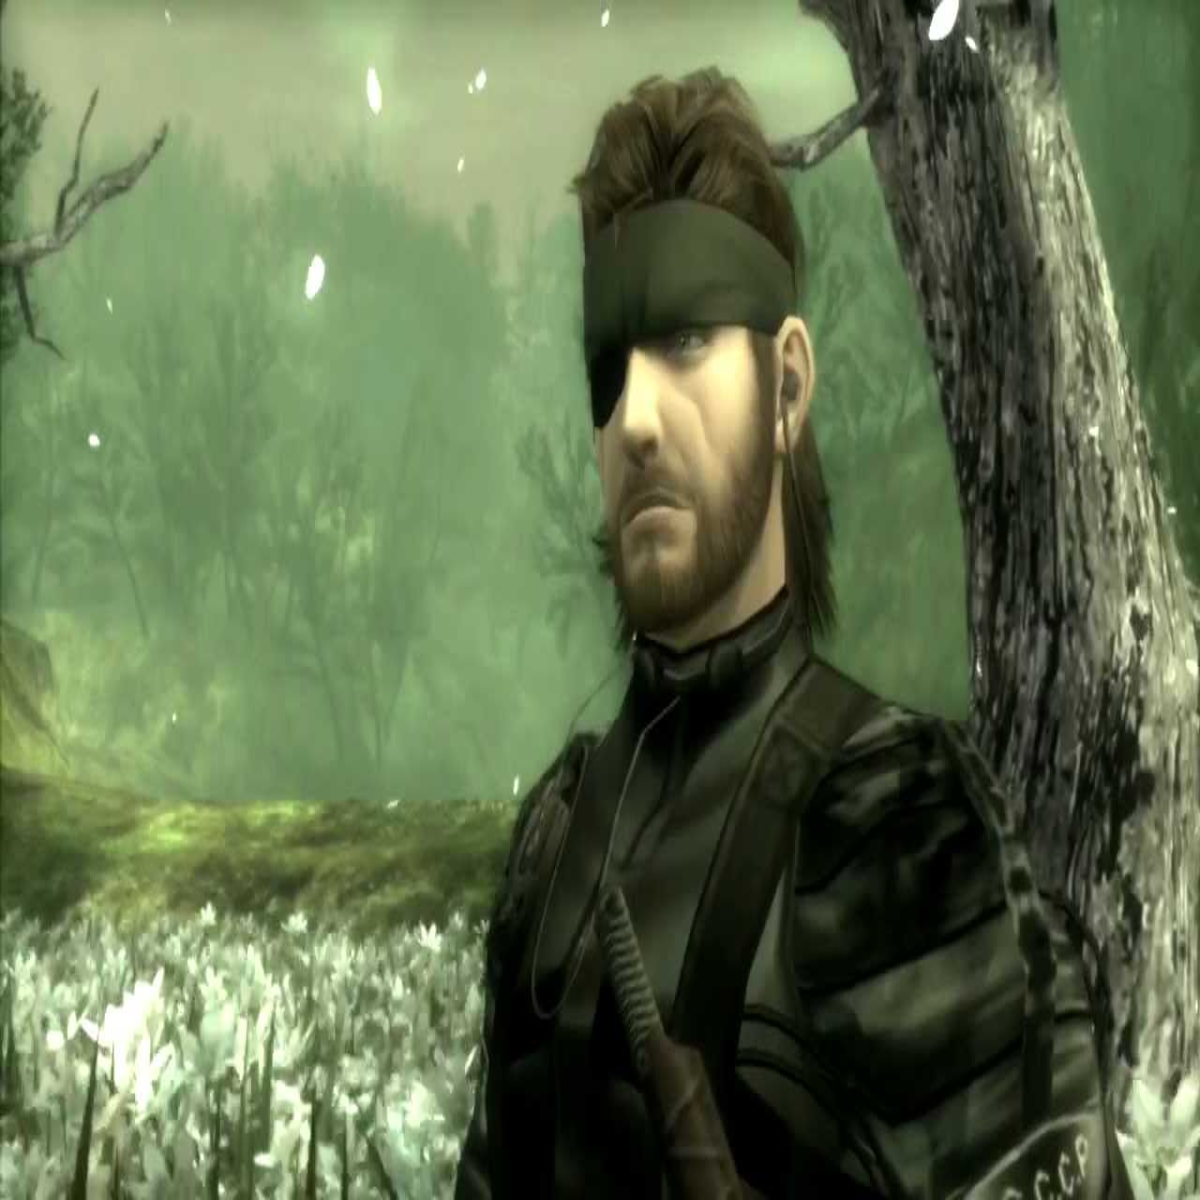 Nota de Metal Gear Solid Delta: Snake Eater - Nota do Game